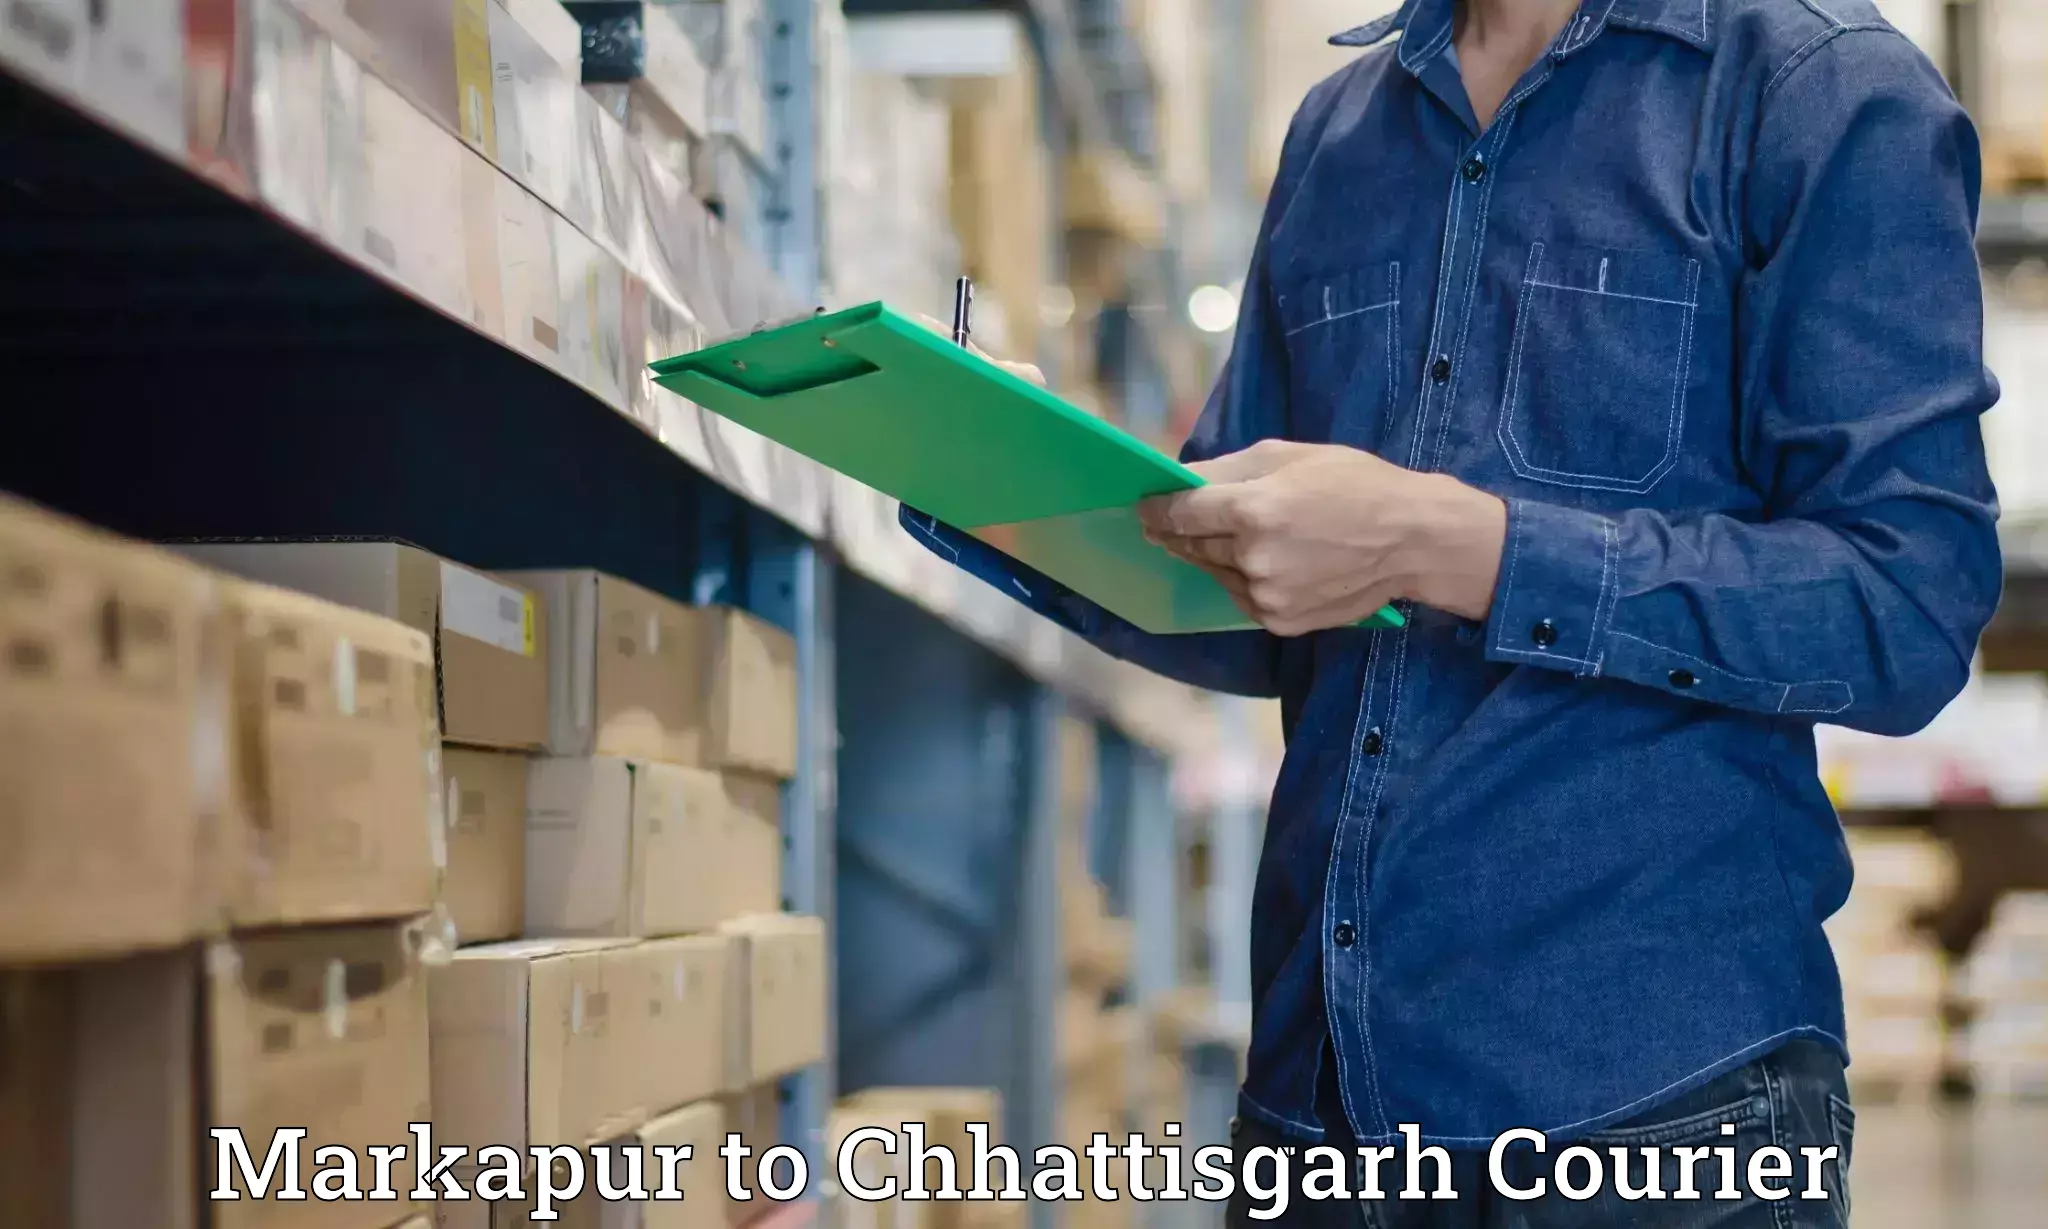 Speedy delivery service Markapur to Chhattisgarh